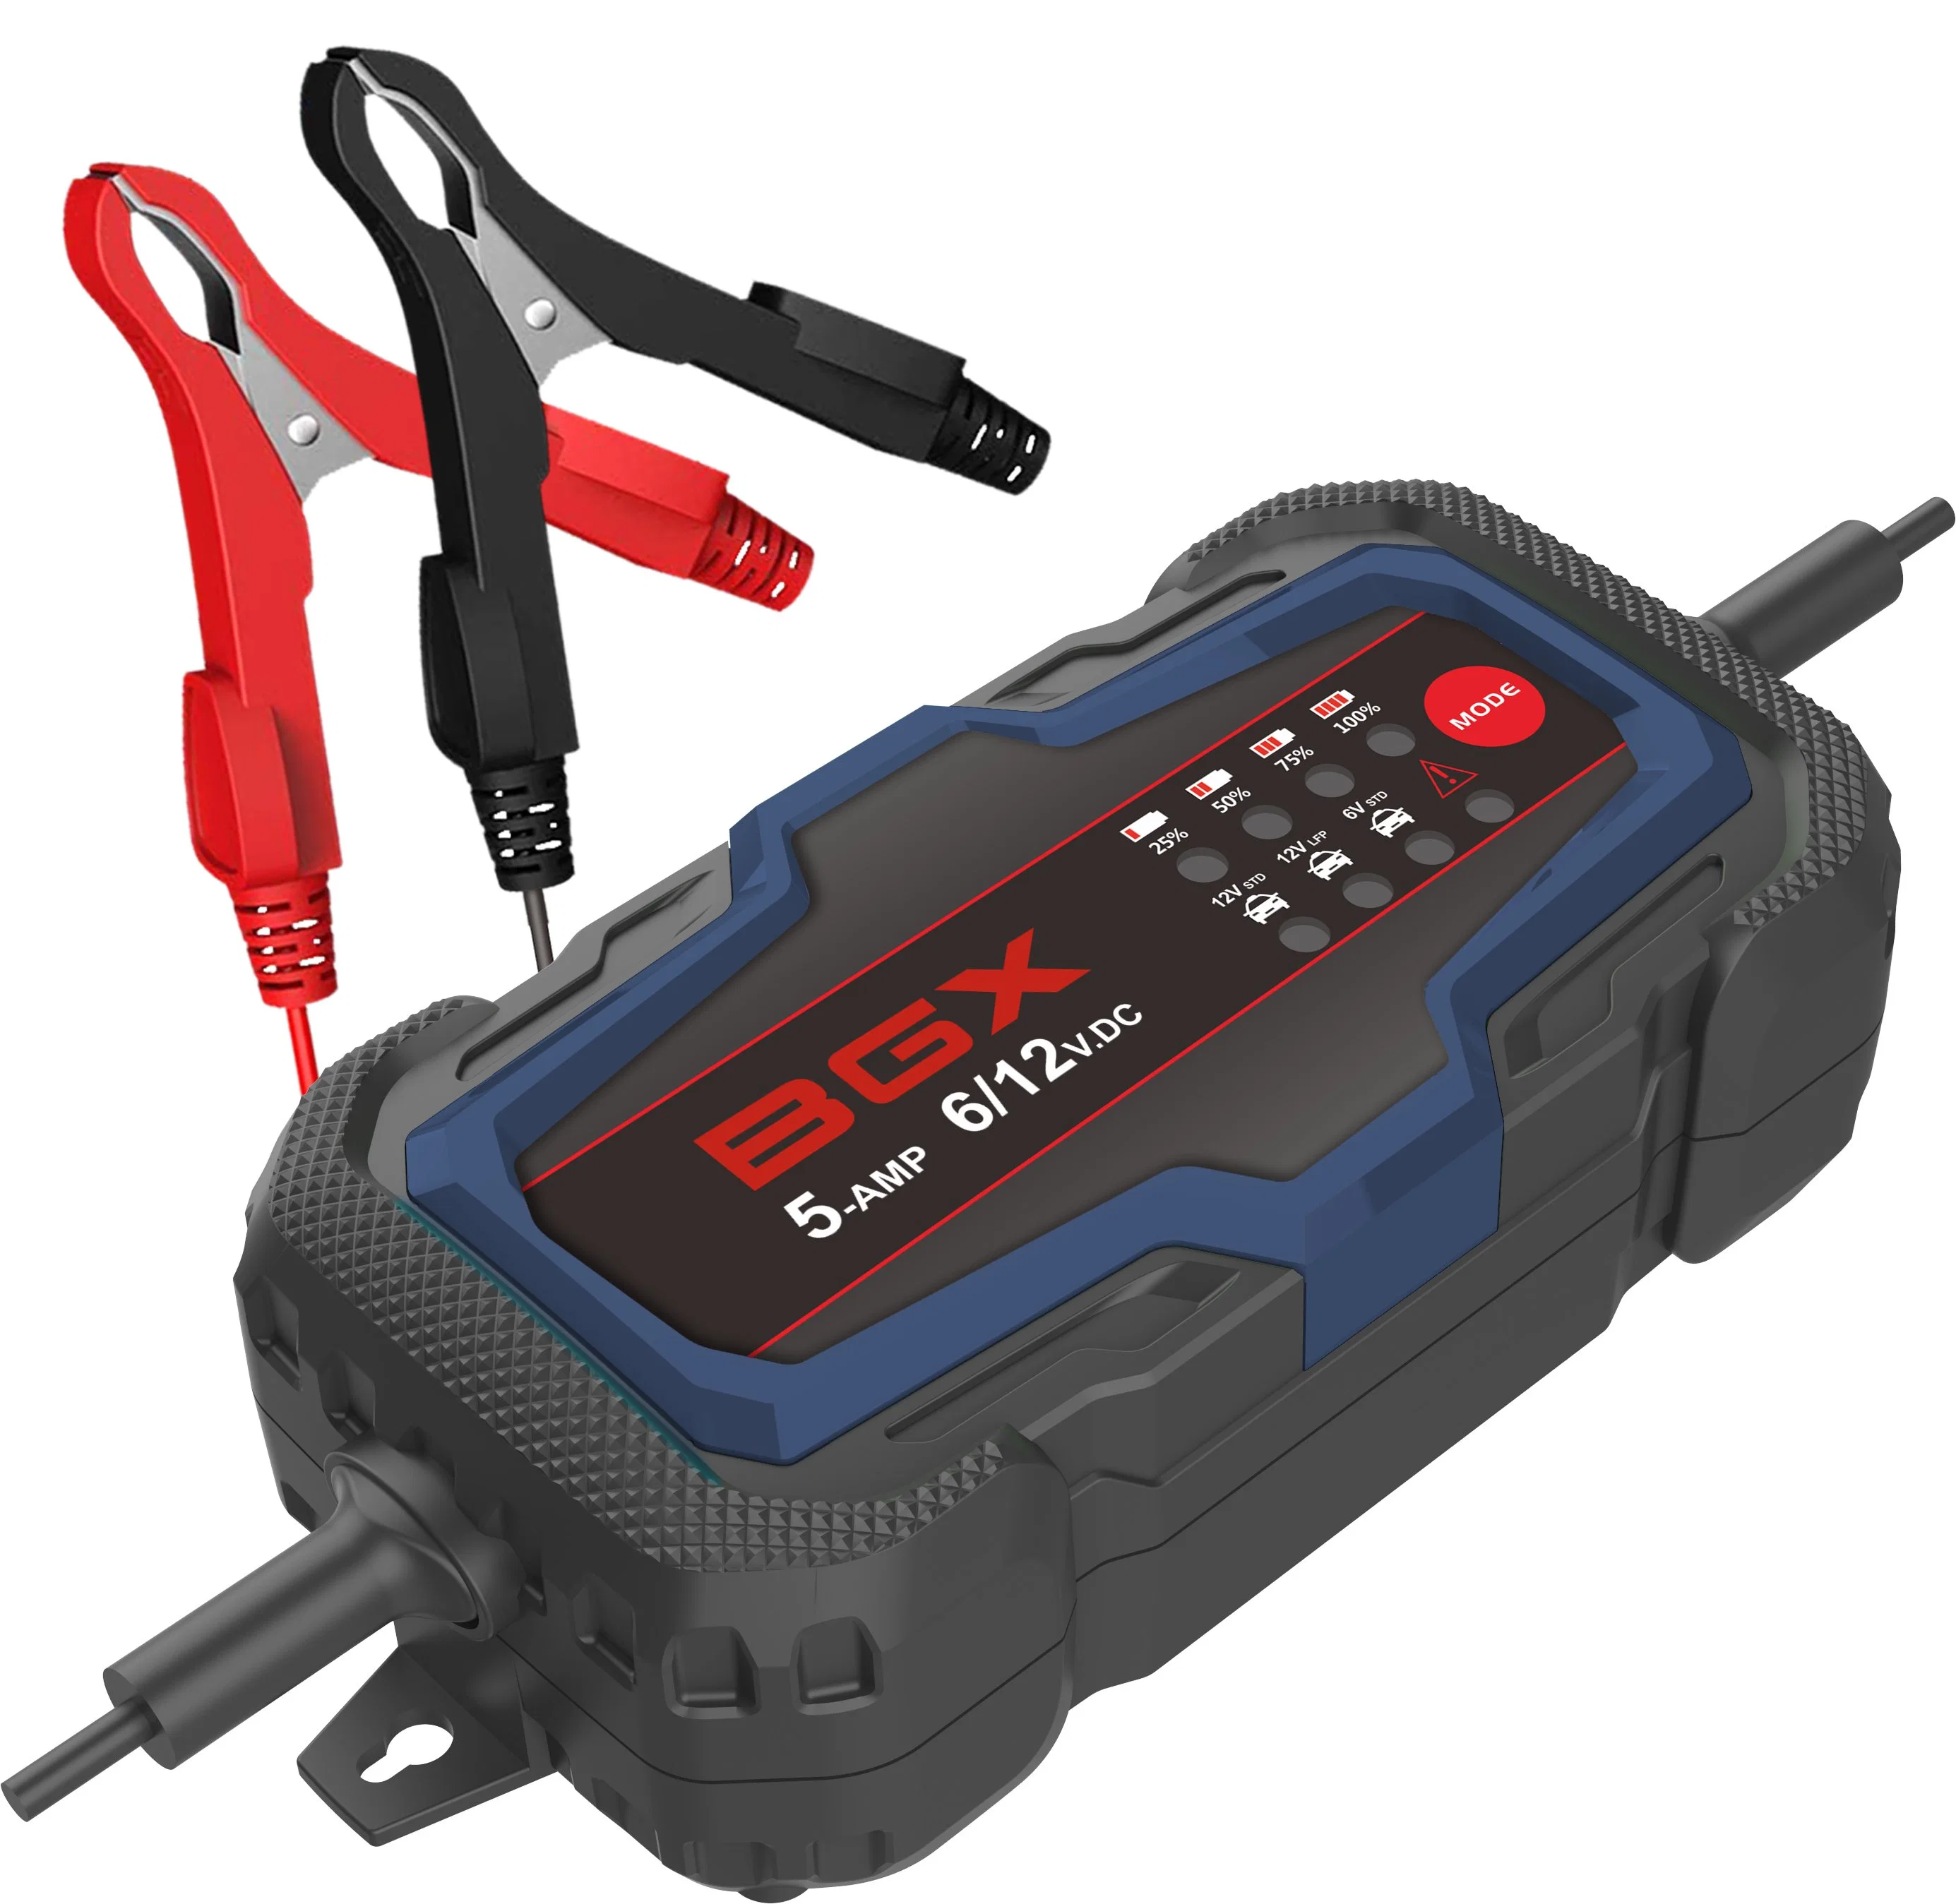 Chargeur de batterie automobile BGX 12 V 5 a chargeur de batterie LED voiture outils